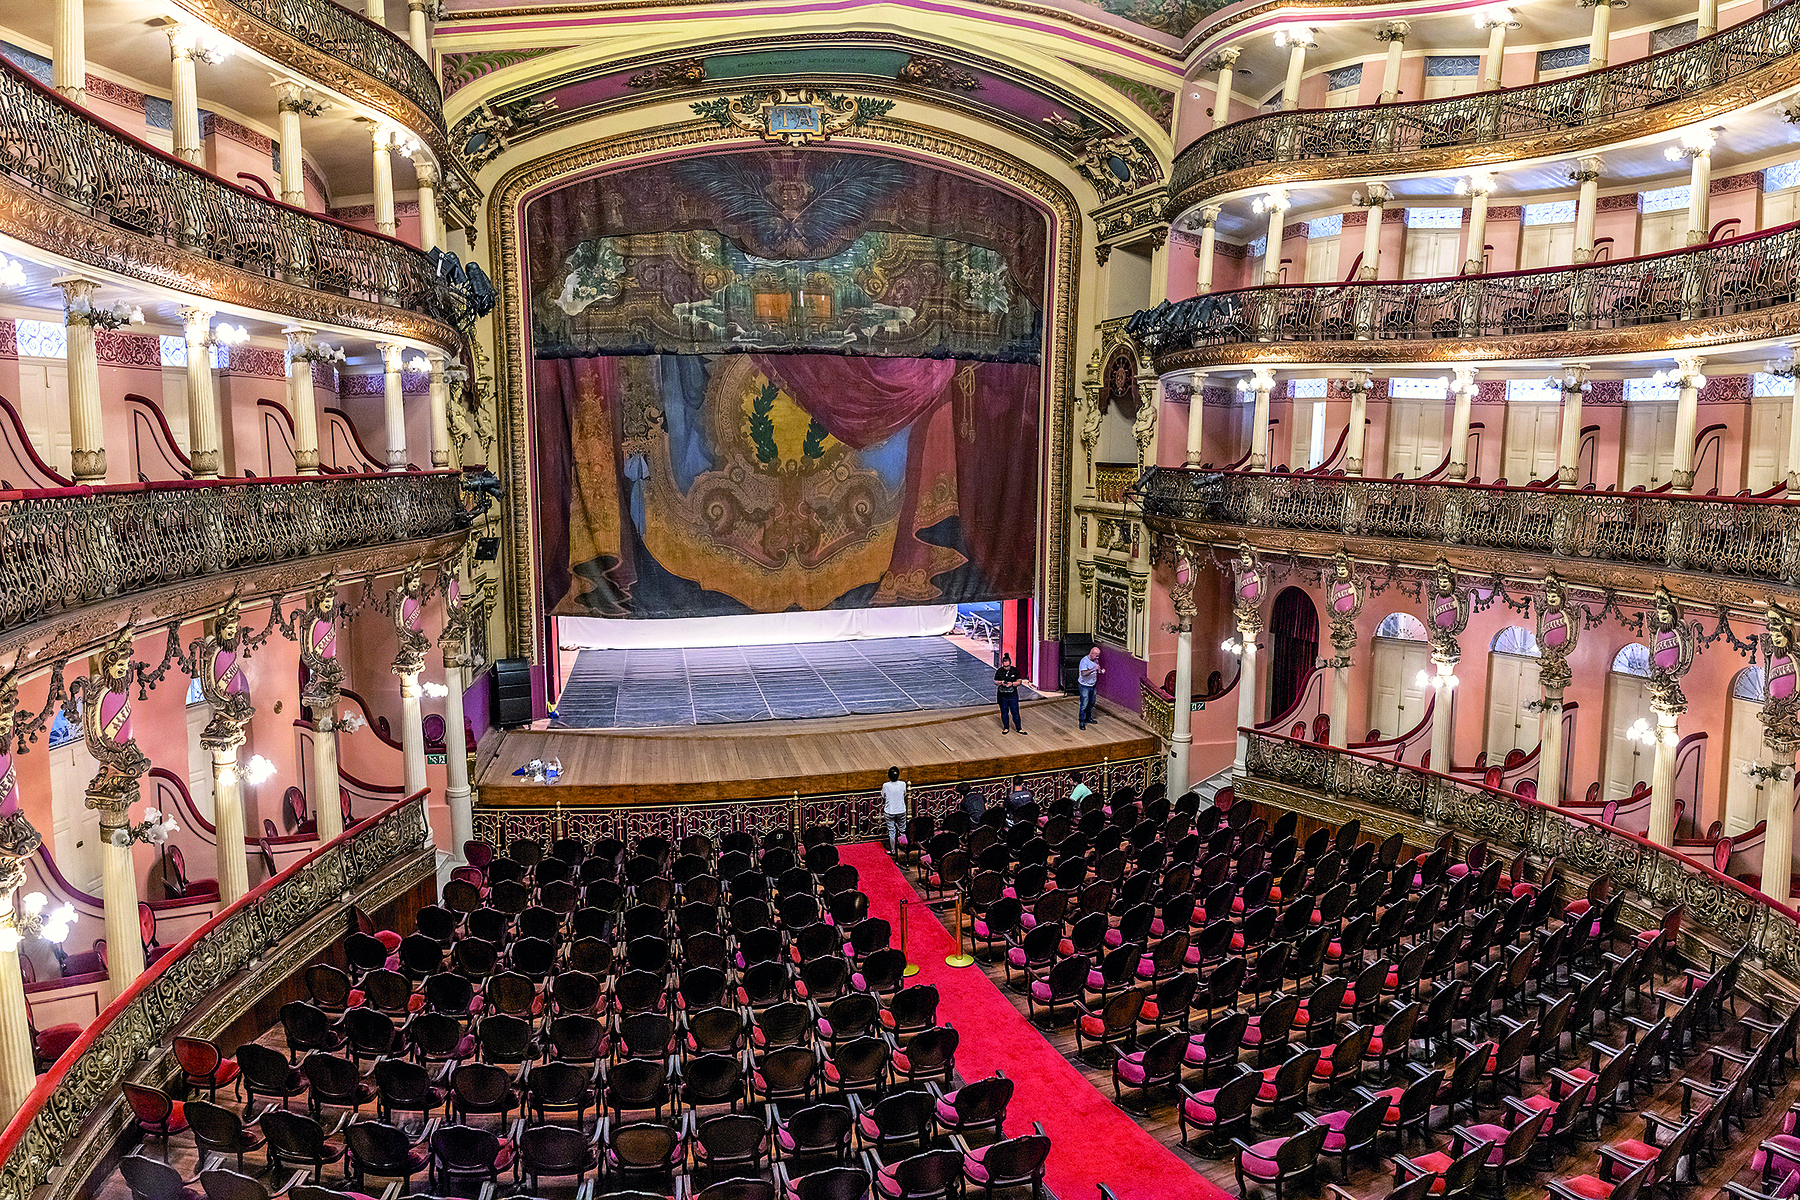 Fotografia. Vista geral da parte interna de um teatro luxuoso, decorado em vermelho e dourado. Há poltronas na plateia e quatro andares de camarotes nas laterais. O palco é grande e tem uma cortina em tons de vermelho e amarelo.